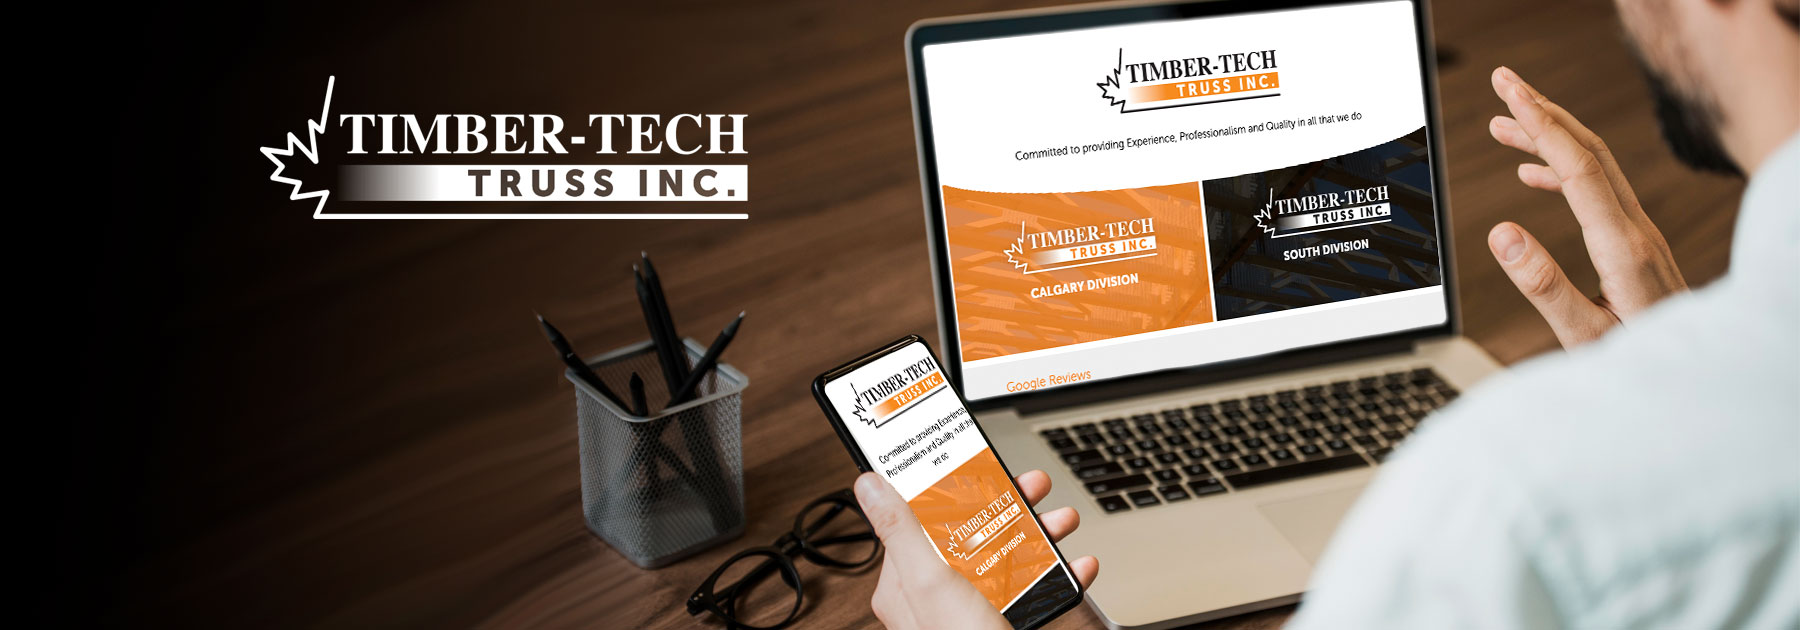 Timber-Tech Truss Inc.